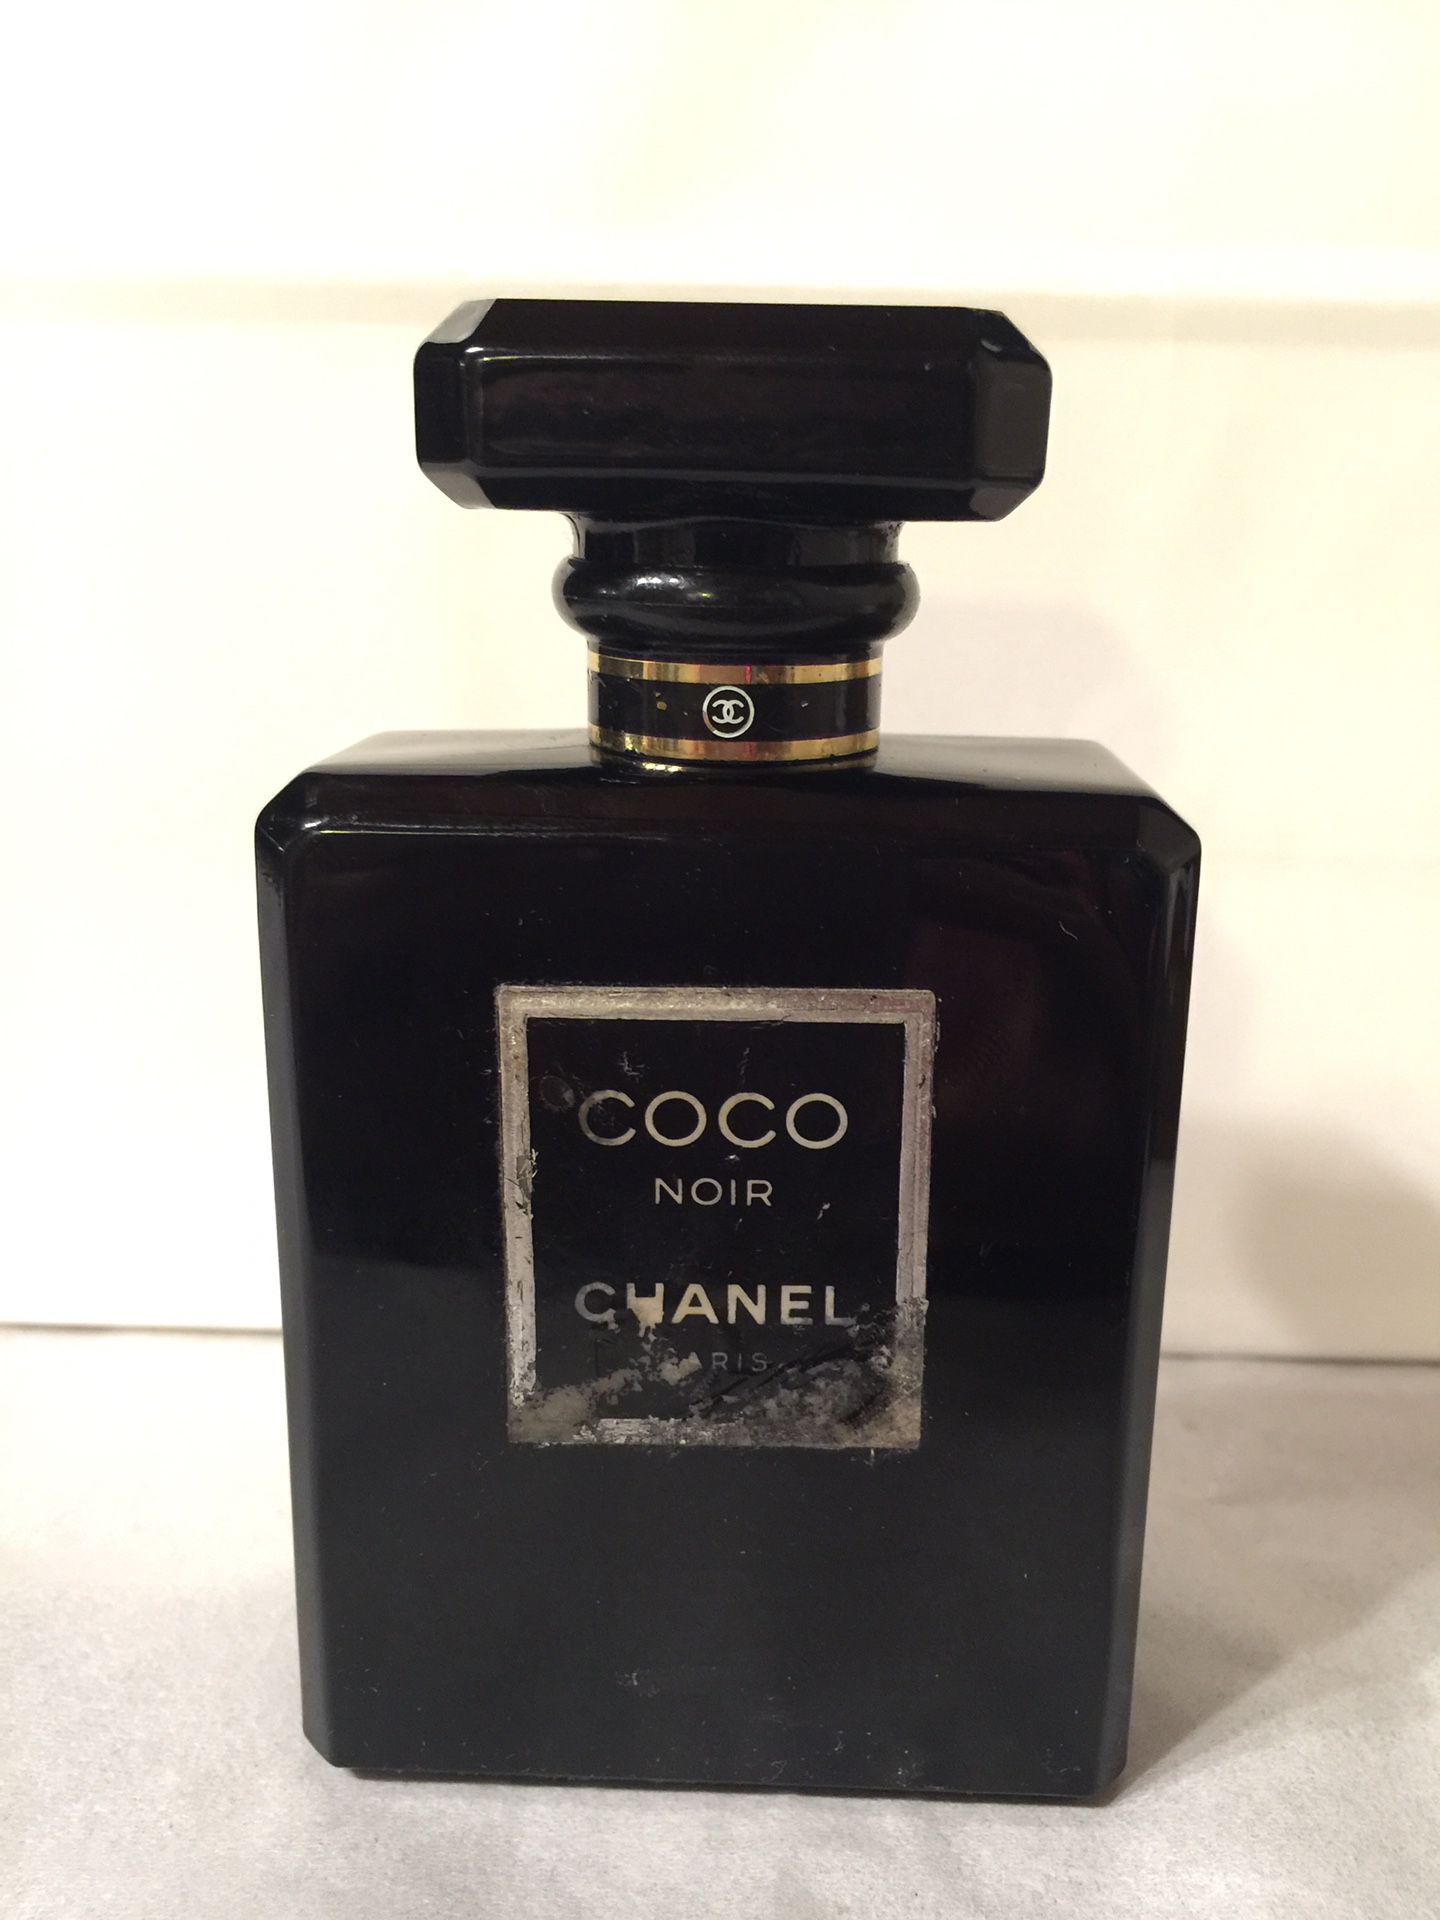 Coco NOIR Chanel 3.4oz Eau de Parfum Perfume